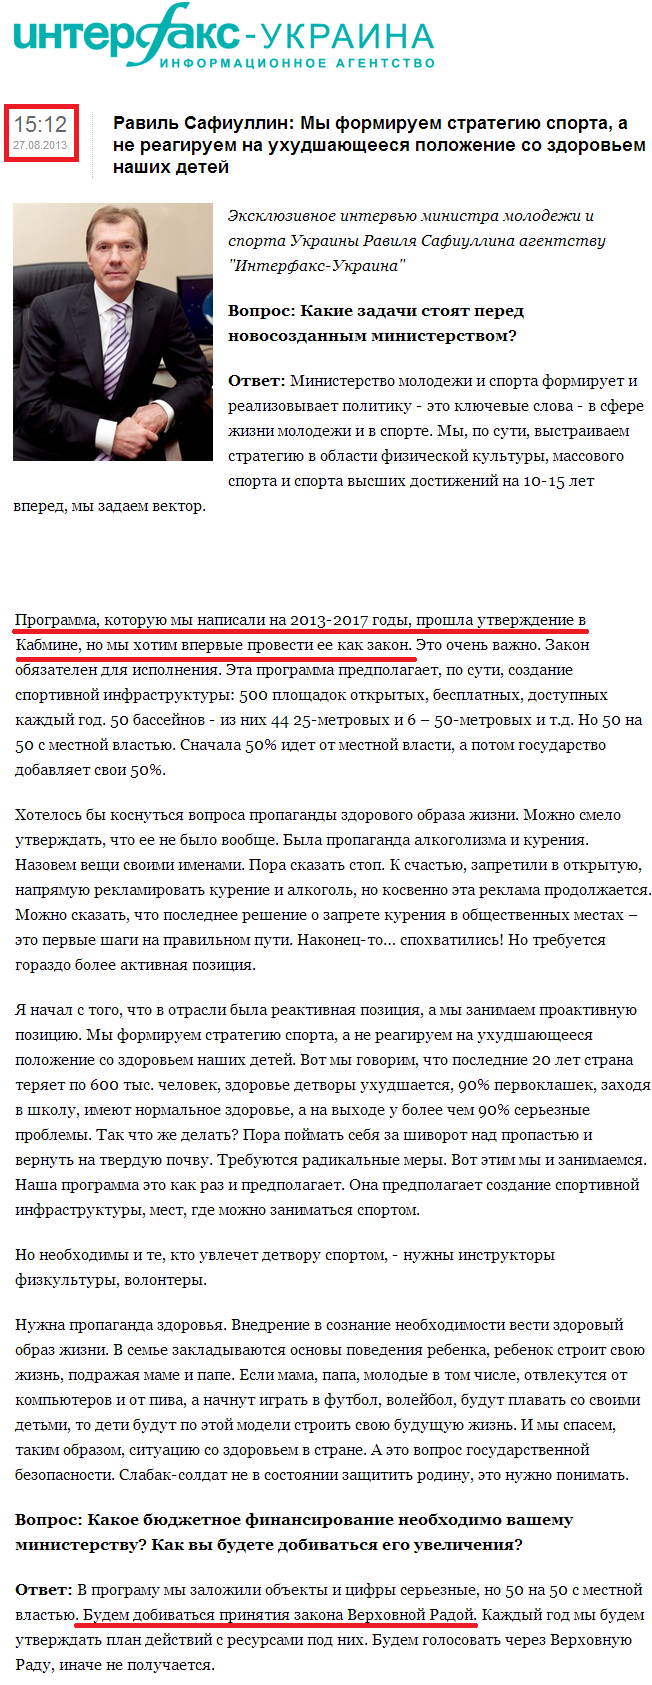 http://interfax.com.ua/news/interview/165480.html